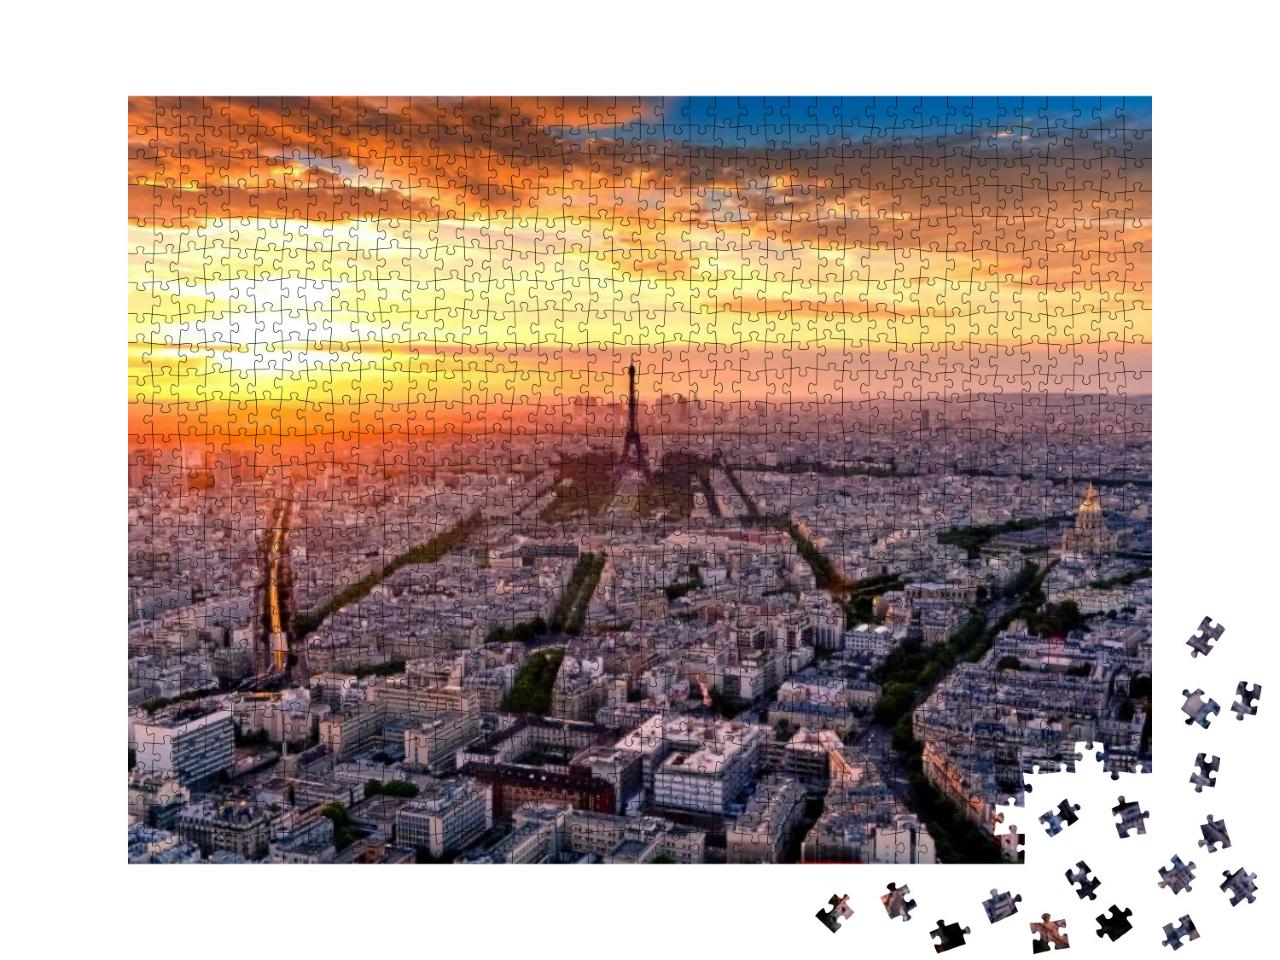 Puzzle 1000 Teile „Luftaufnahme von Paris bei Sonnenuntergang“